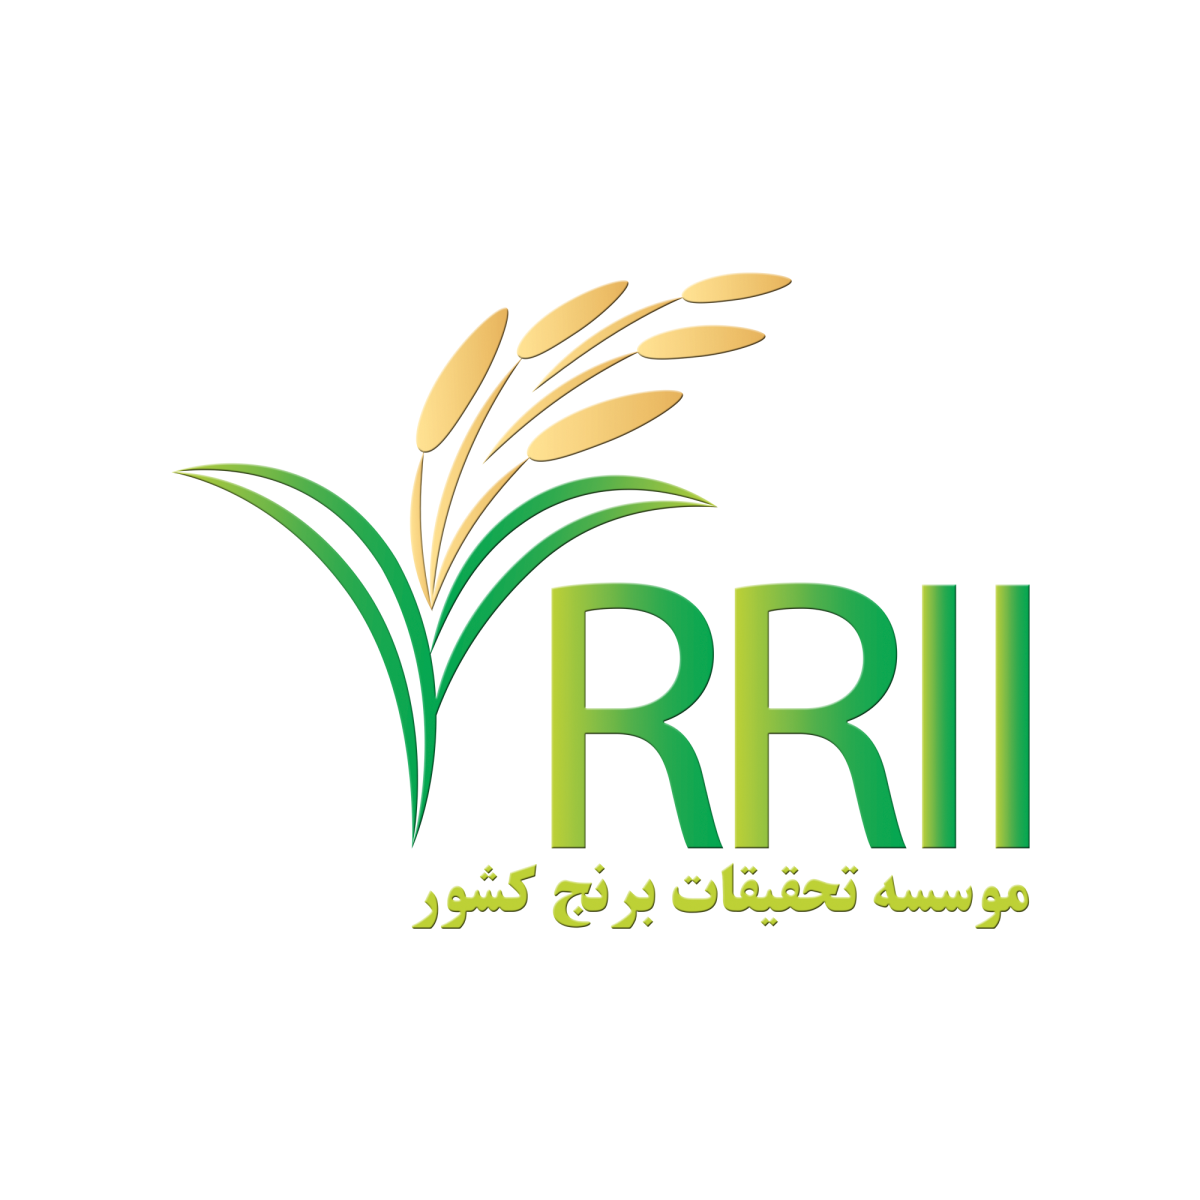 مصاحبه خبرگزاری ایرنا با رئیس موسسه تحقیقات برنج كشور با موضوع «لزوم استفاده از تکنولوژی روز دنیا در کشاورزی برنج»